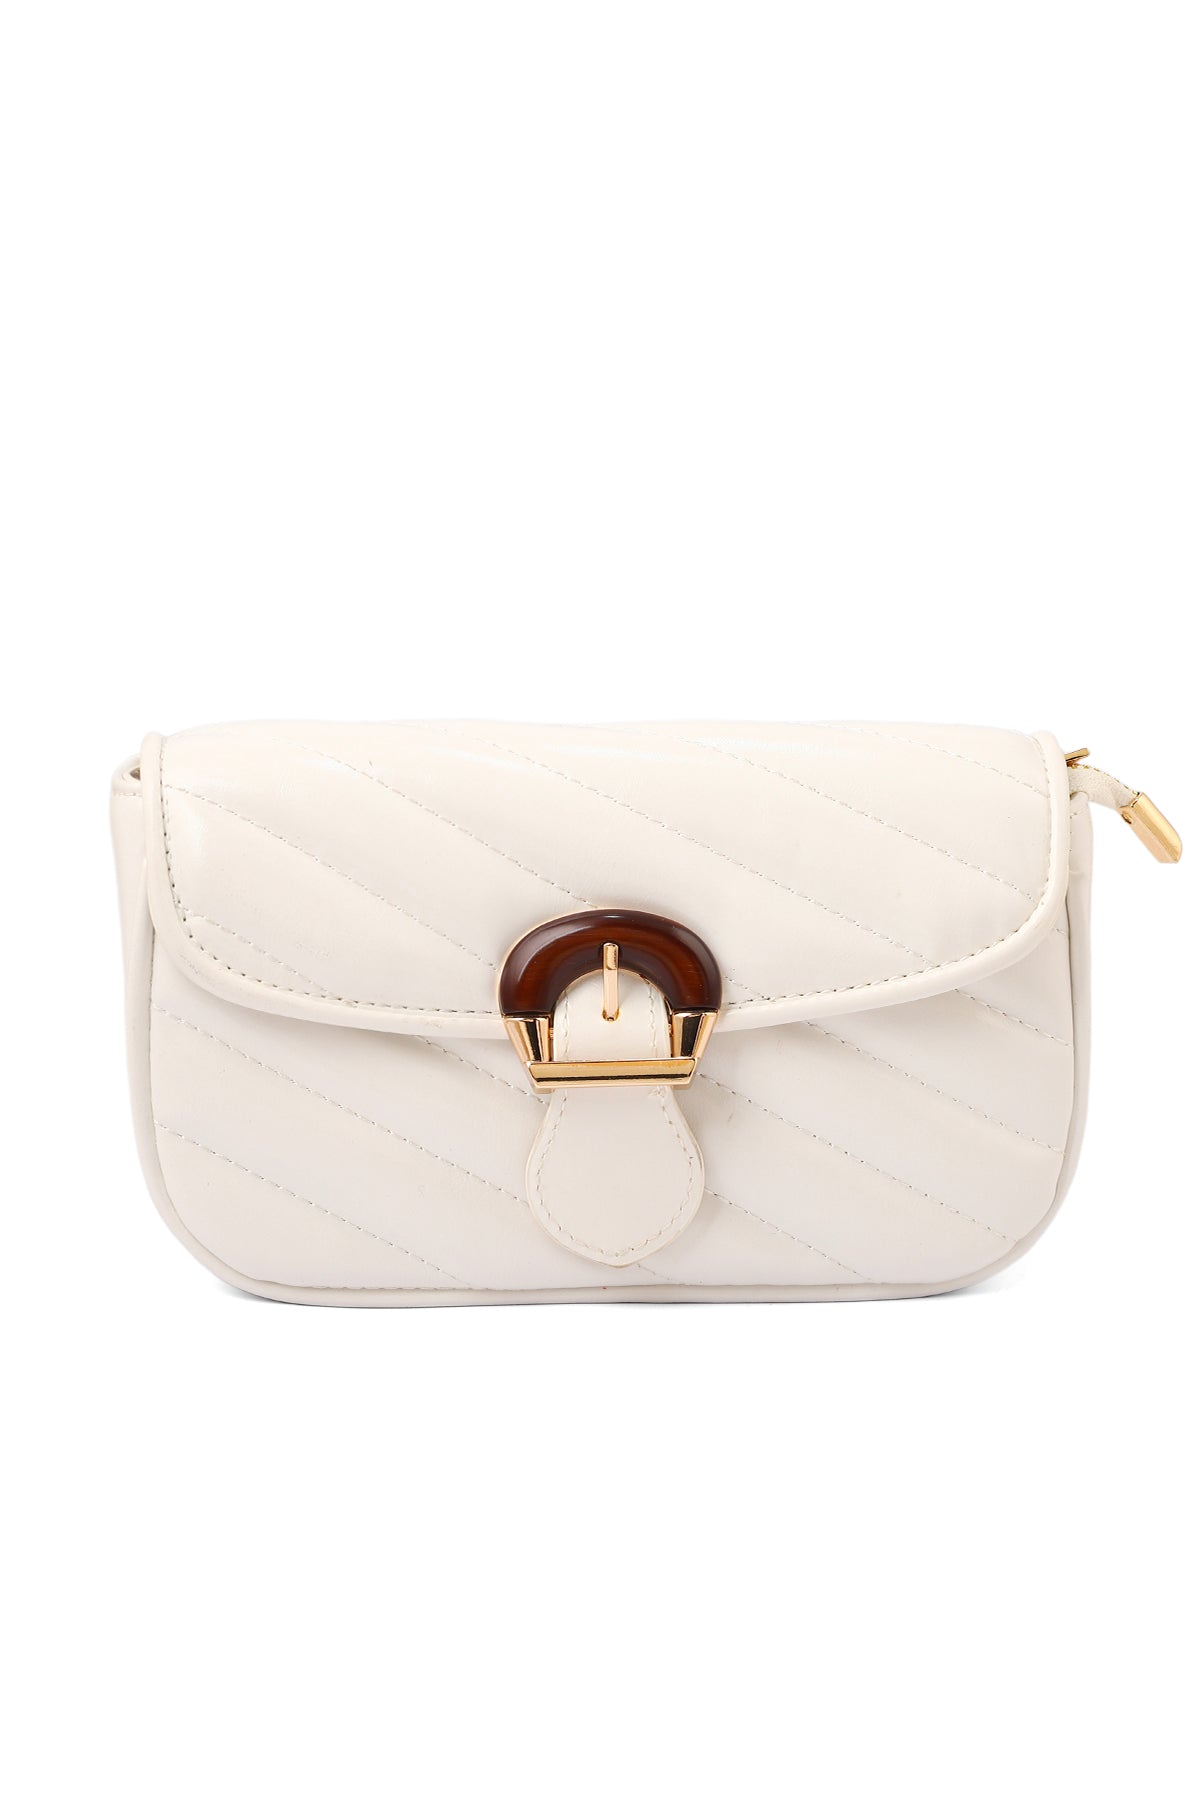 Baguette Shoulder Bags B15085-White – Insignia PK